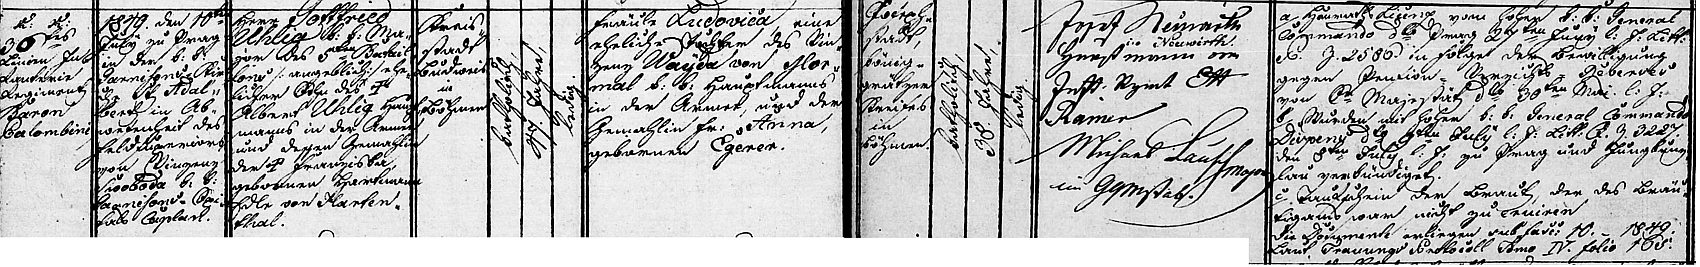 Záznam oddací matriky o jeho první svatbě v pražském kostele sv. Vojtěcha v Jirchářích 10. července roku 1849 s Ludovikou Waydovou, která zemřela v roce 1854